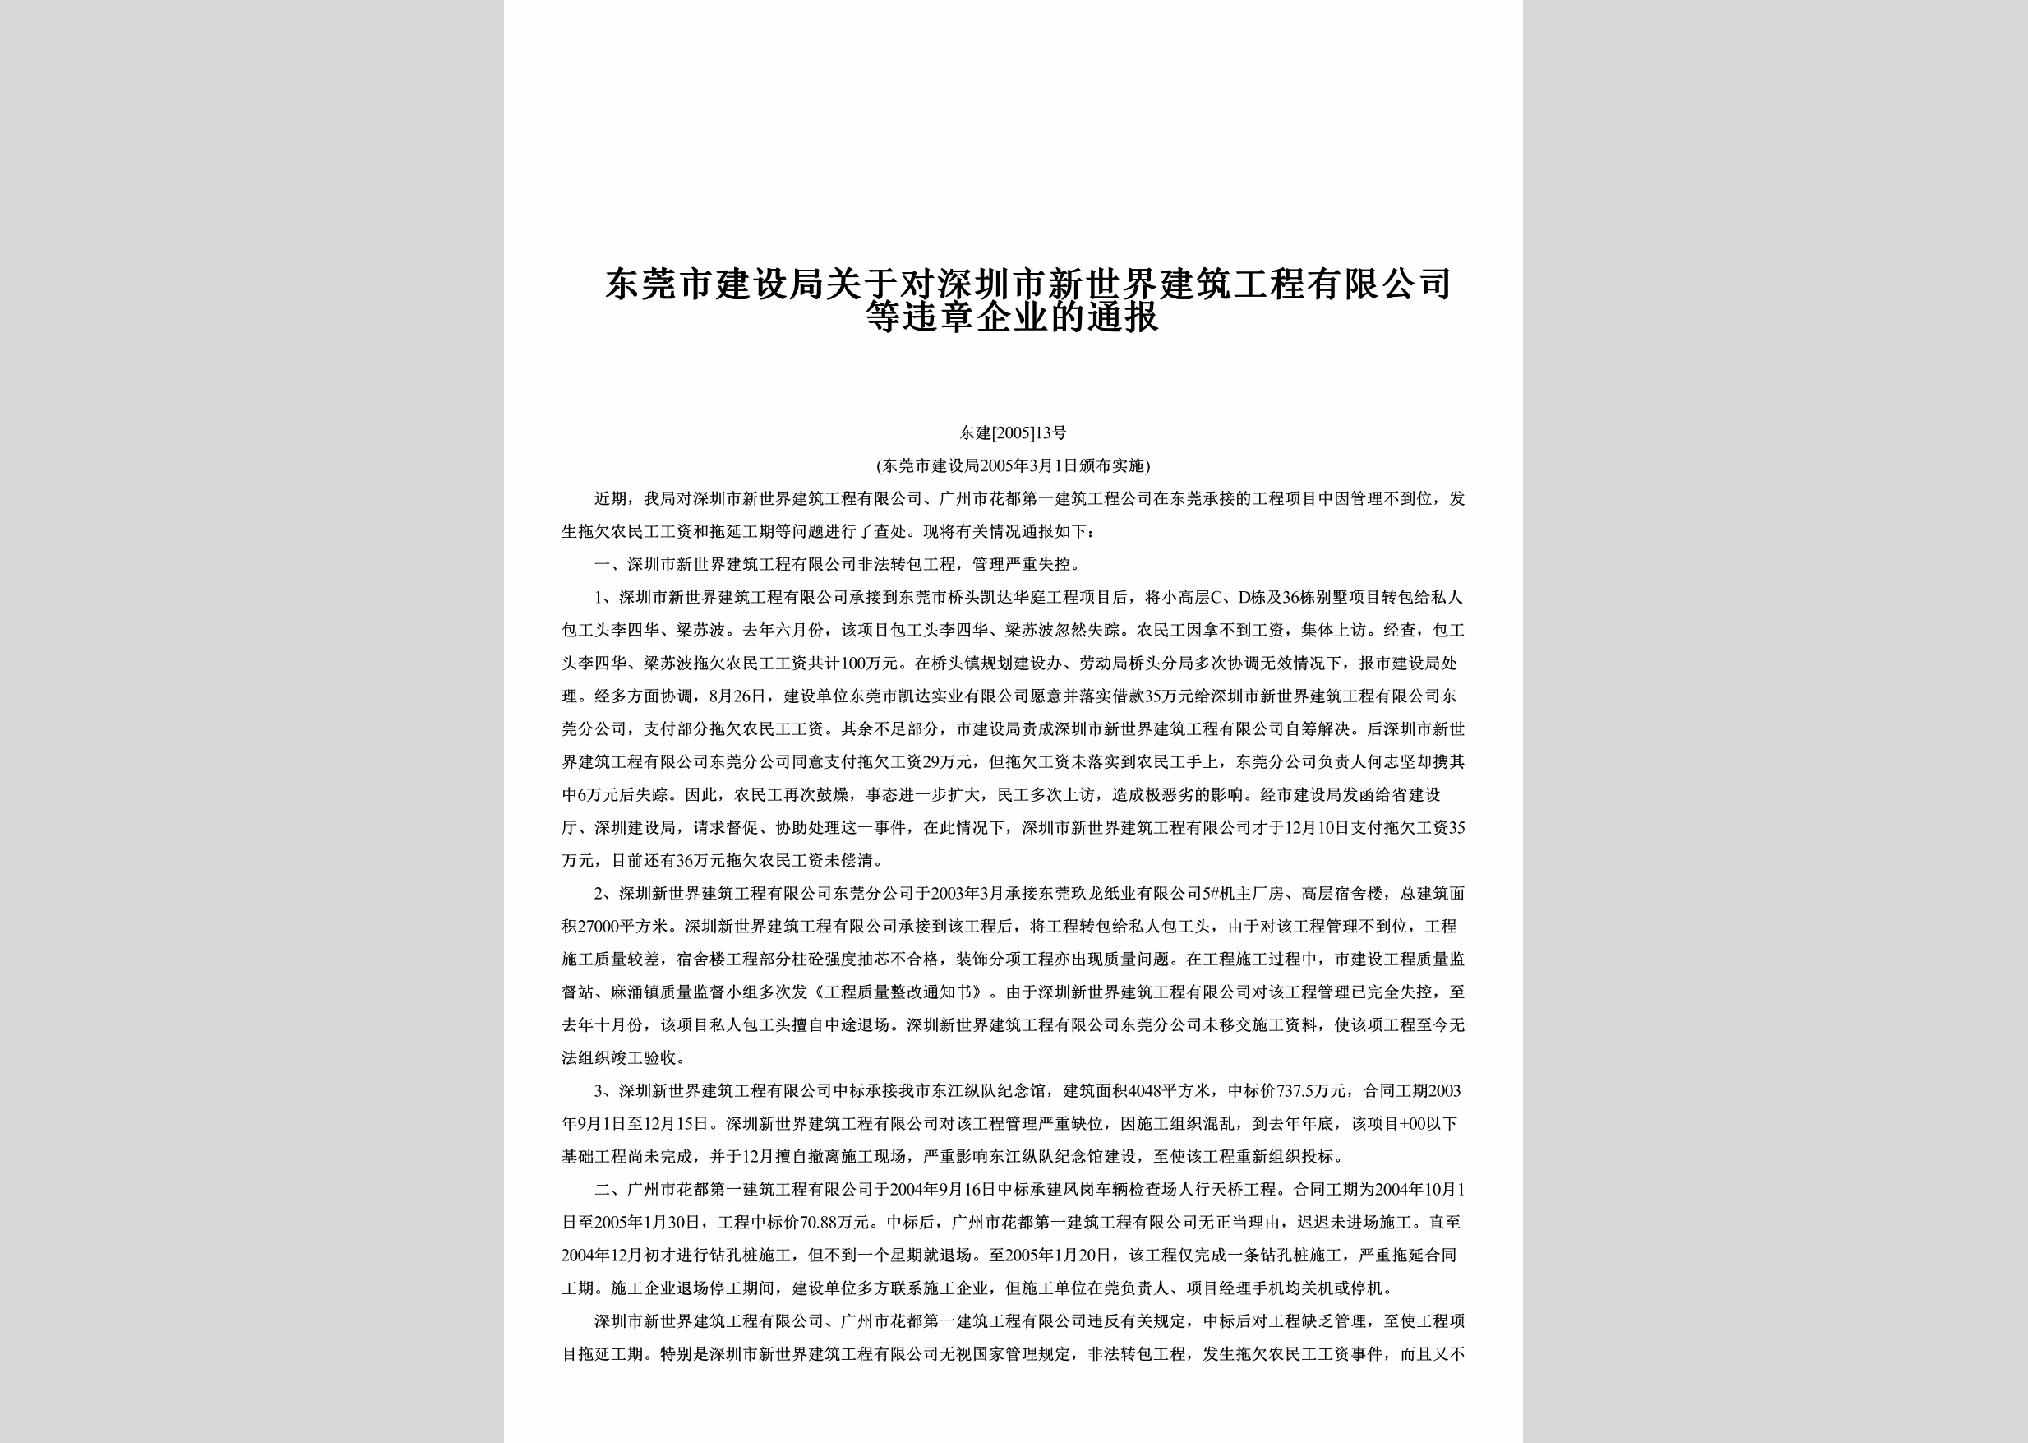 东建[2005]13号：关于对深圳市新世界建筑工程有限公司等违章企业的通报